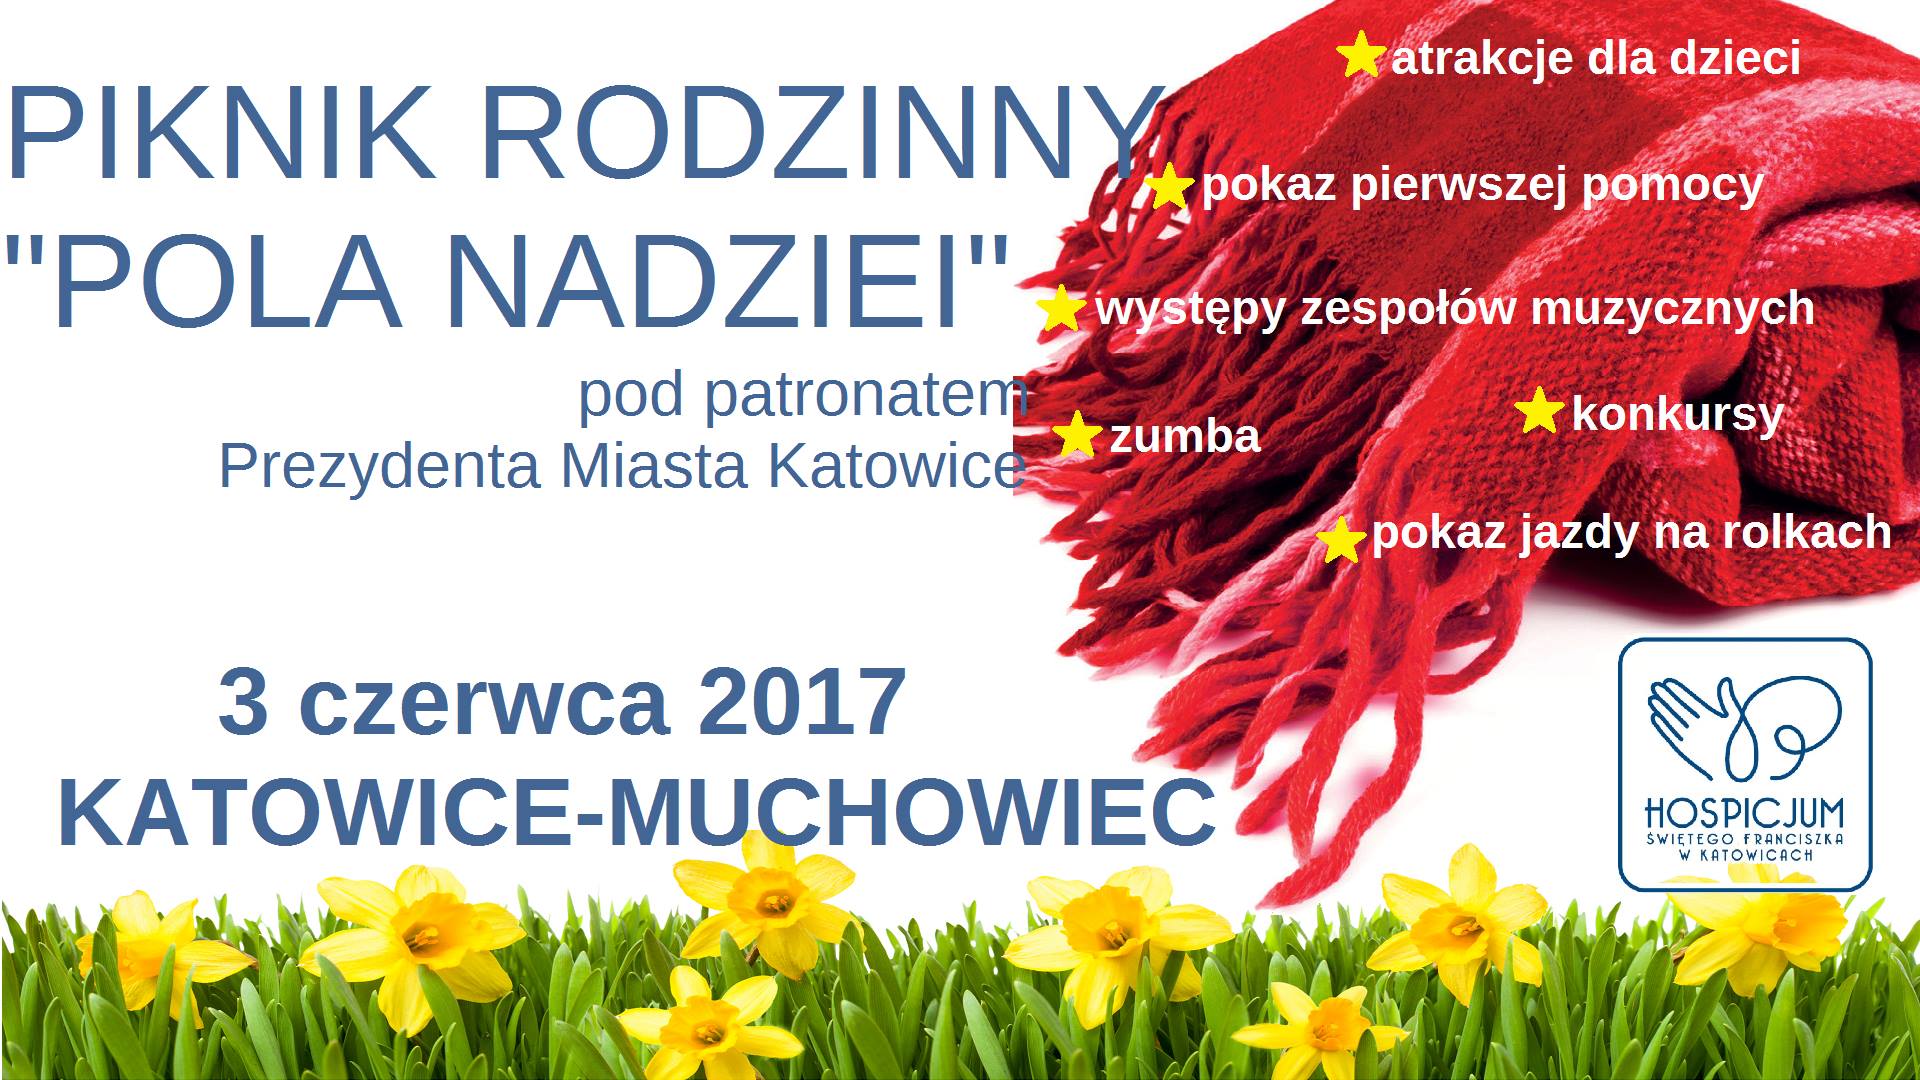 Piknik rodzinny Pola nadziei z Hospicjum św. Franciszka, Katowice, 3 czerwca